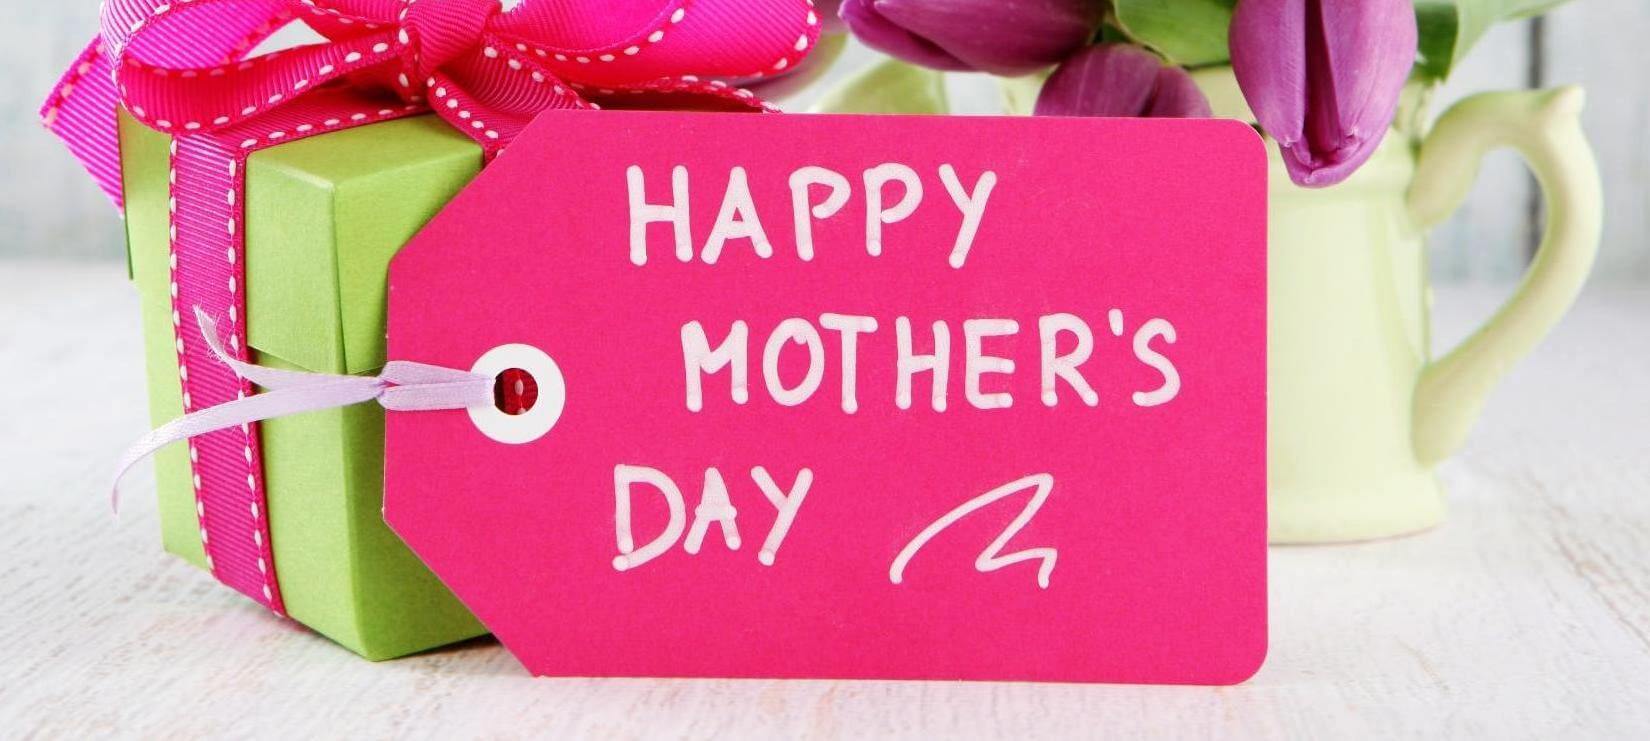 6 τρόποι να πείτε “σ’ αγαπώ” στην Γιορτή της Μητέρας”